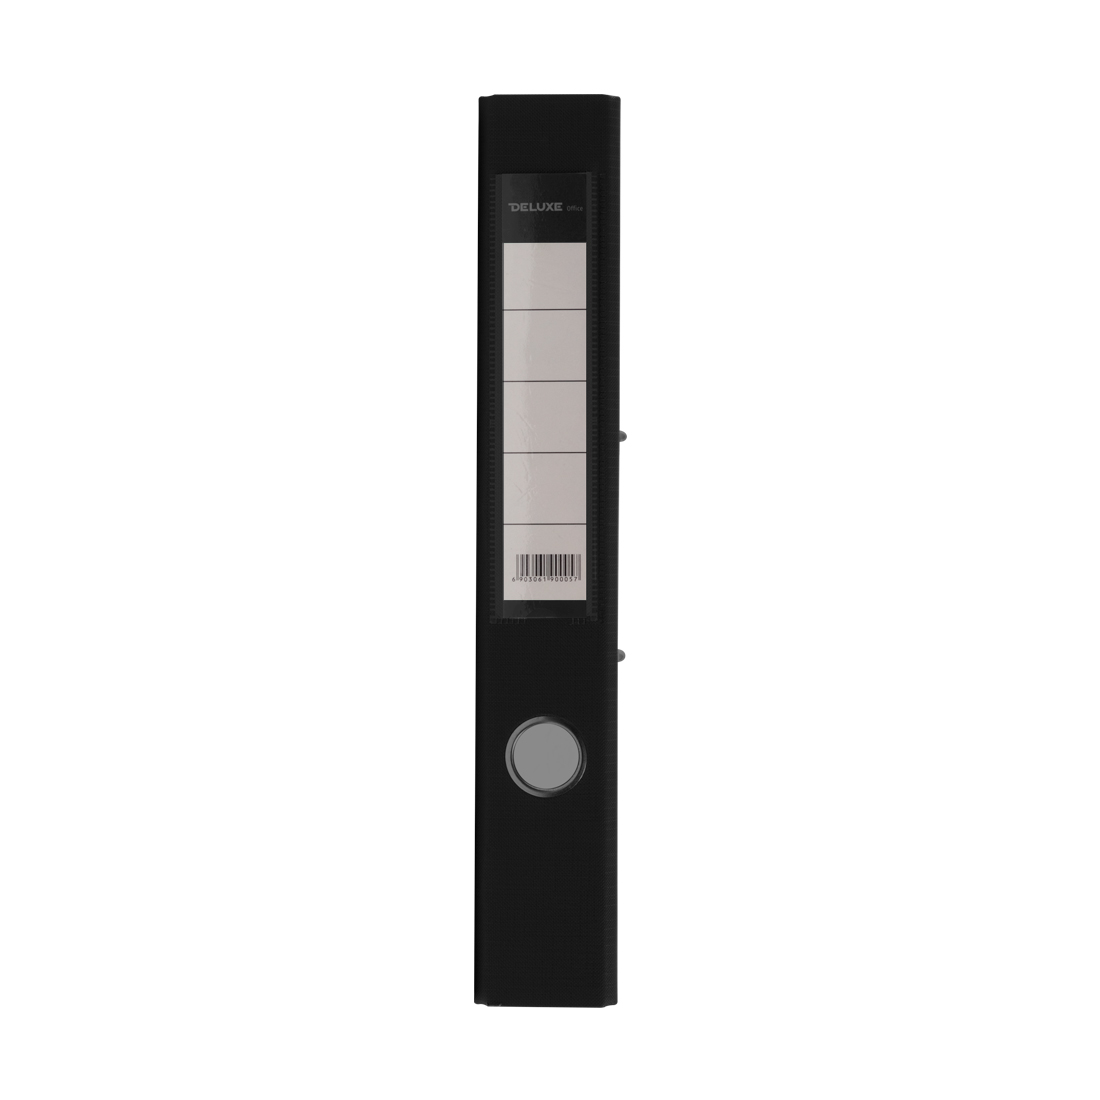 Папка-регистратор Deluxe с арочным механизмом, Office 2-BK19 (2" BLACK), А4, 50 мм, чёрный